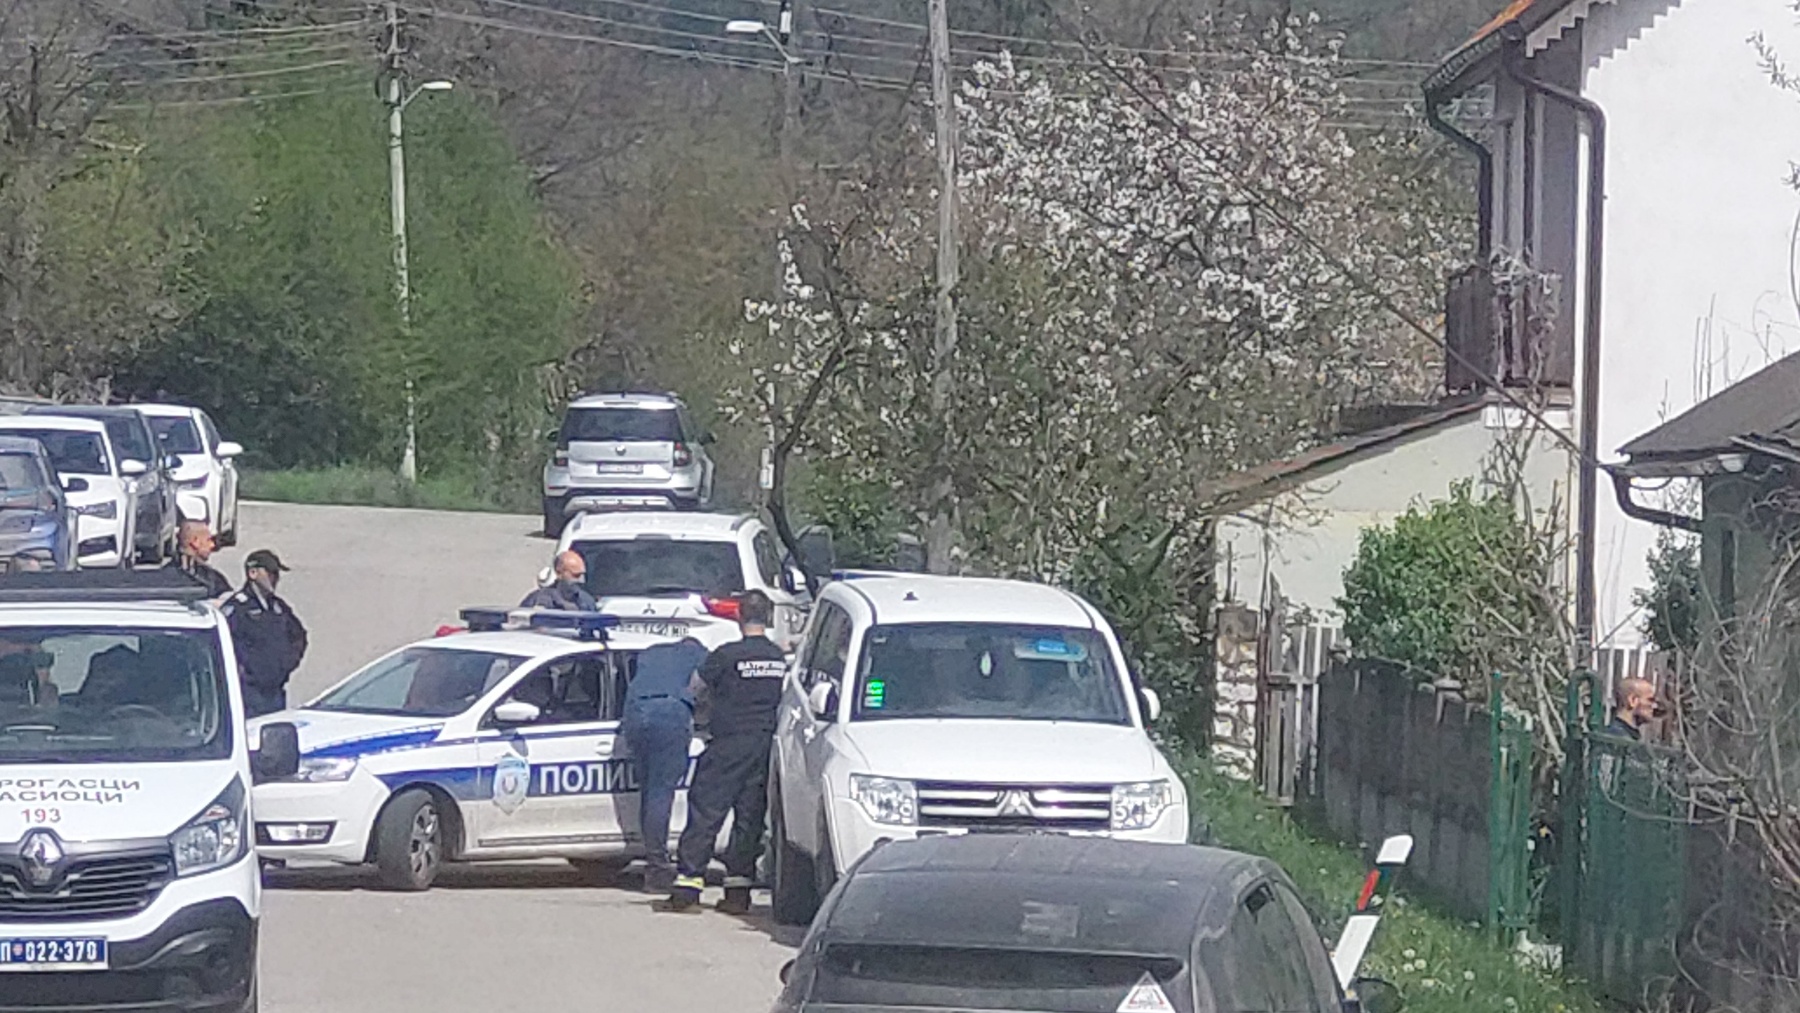 Reporter Danasa u selu Zlot kod Bora: Policija i vatrogasci napustili dvorište kuće osumnjičnog, i dalje se traga za telom devojčice Danke Ilić (FOTO, VIDEO) 3